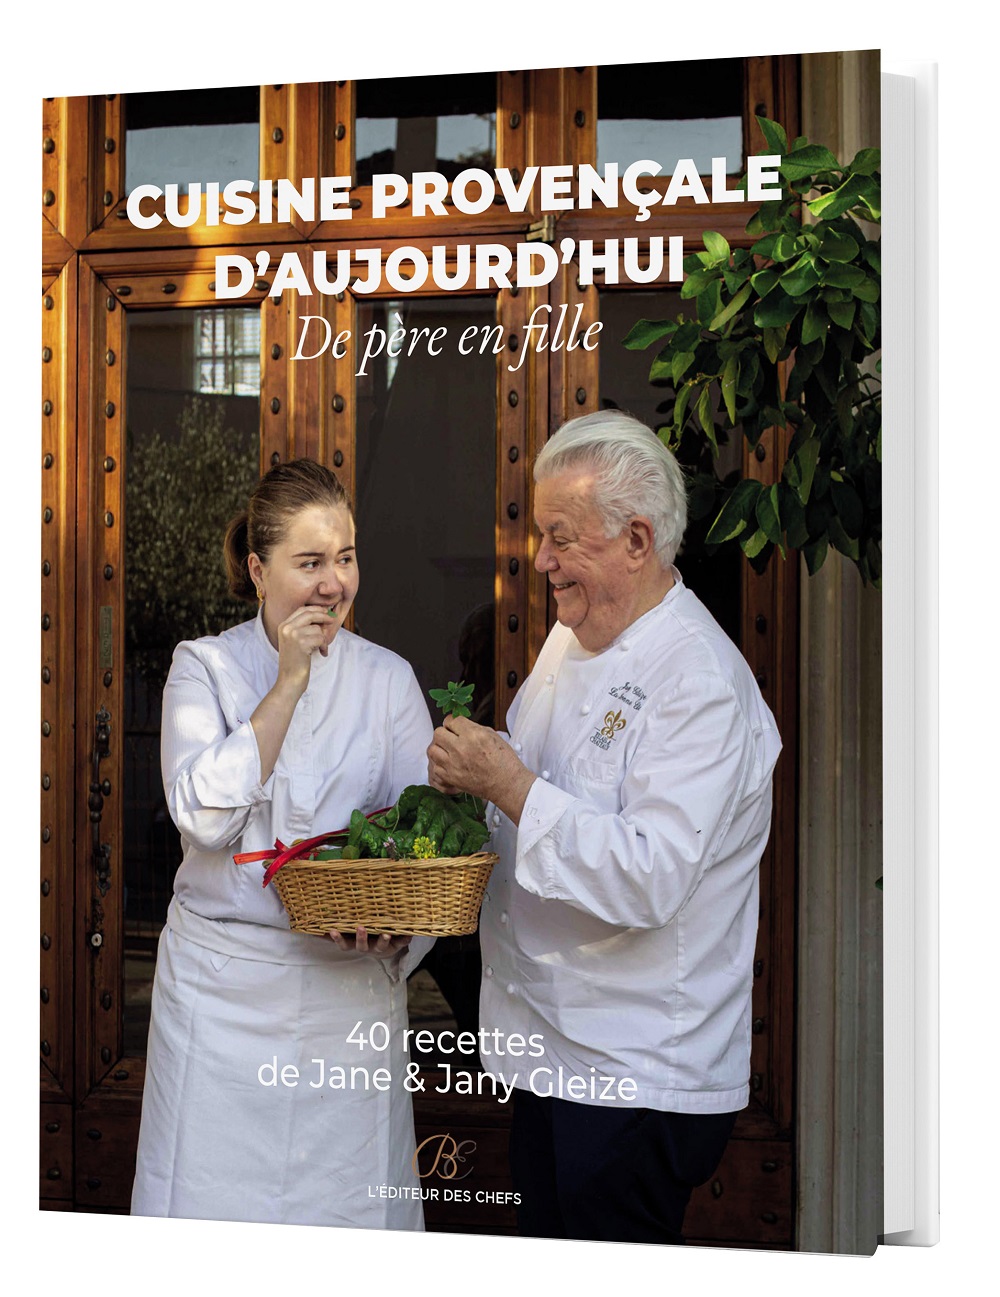 Le livre Cuisine provençale d'aujourd'hui est actuellement en vente en librairies